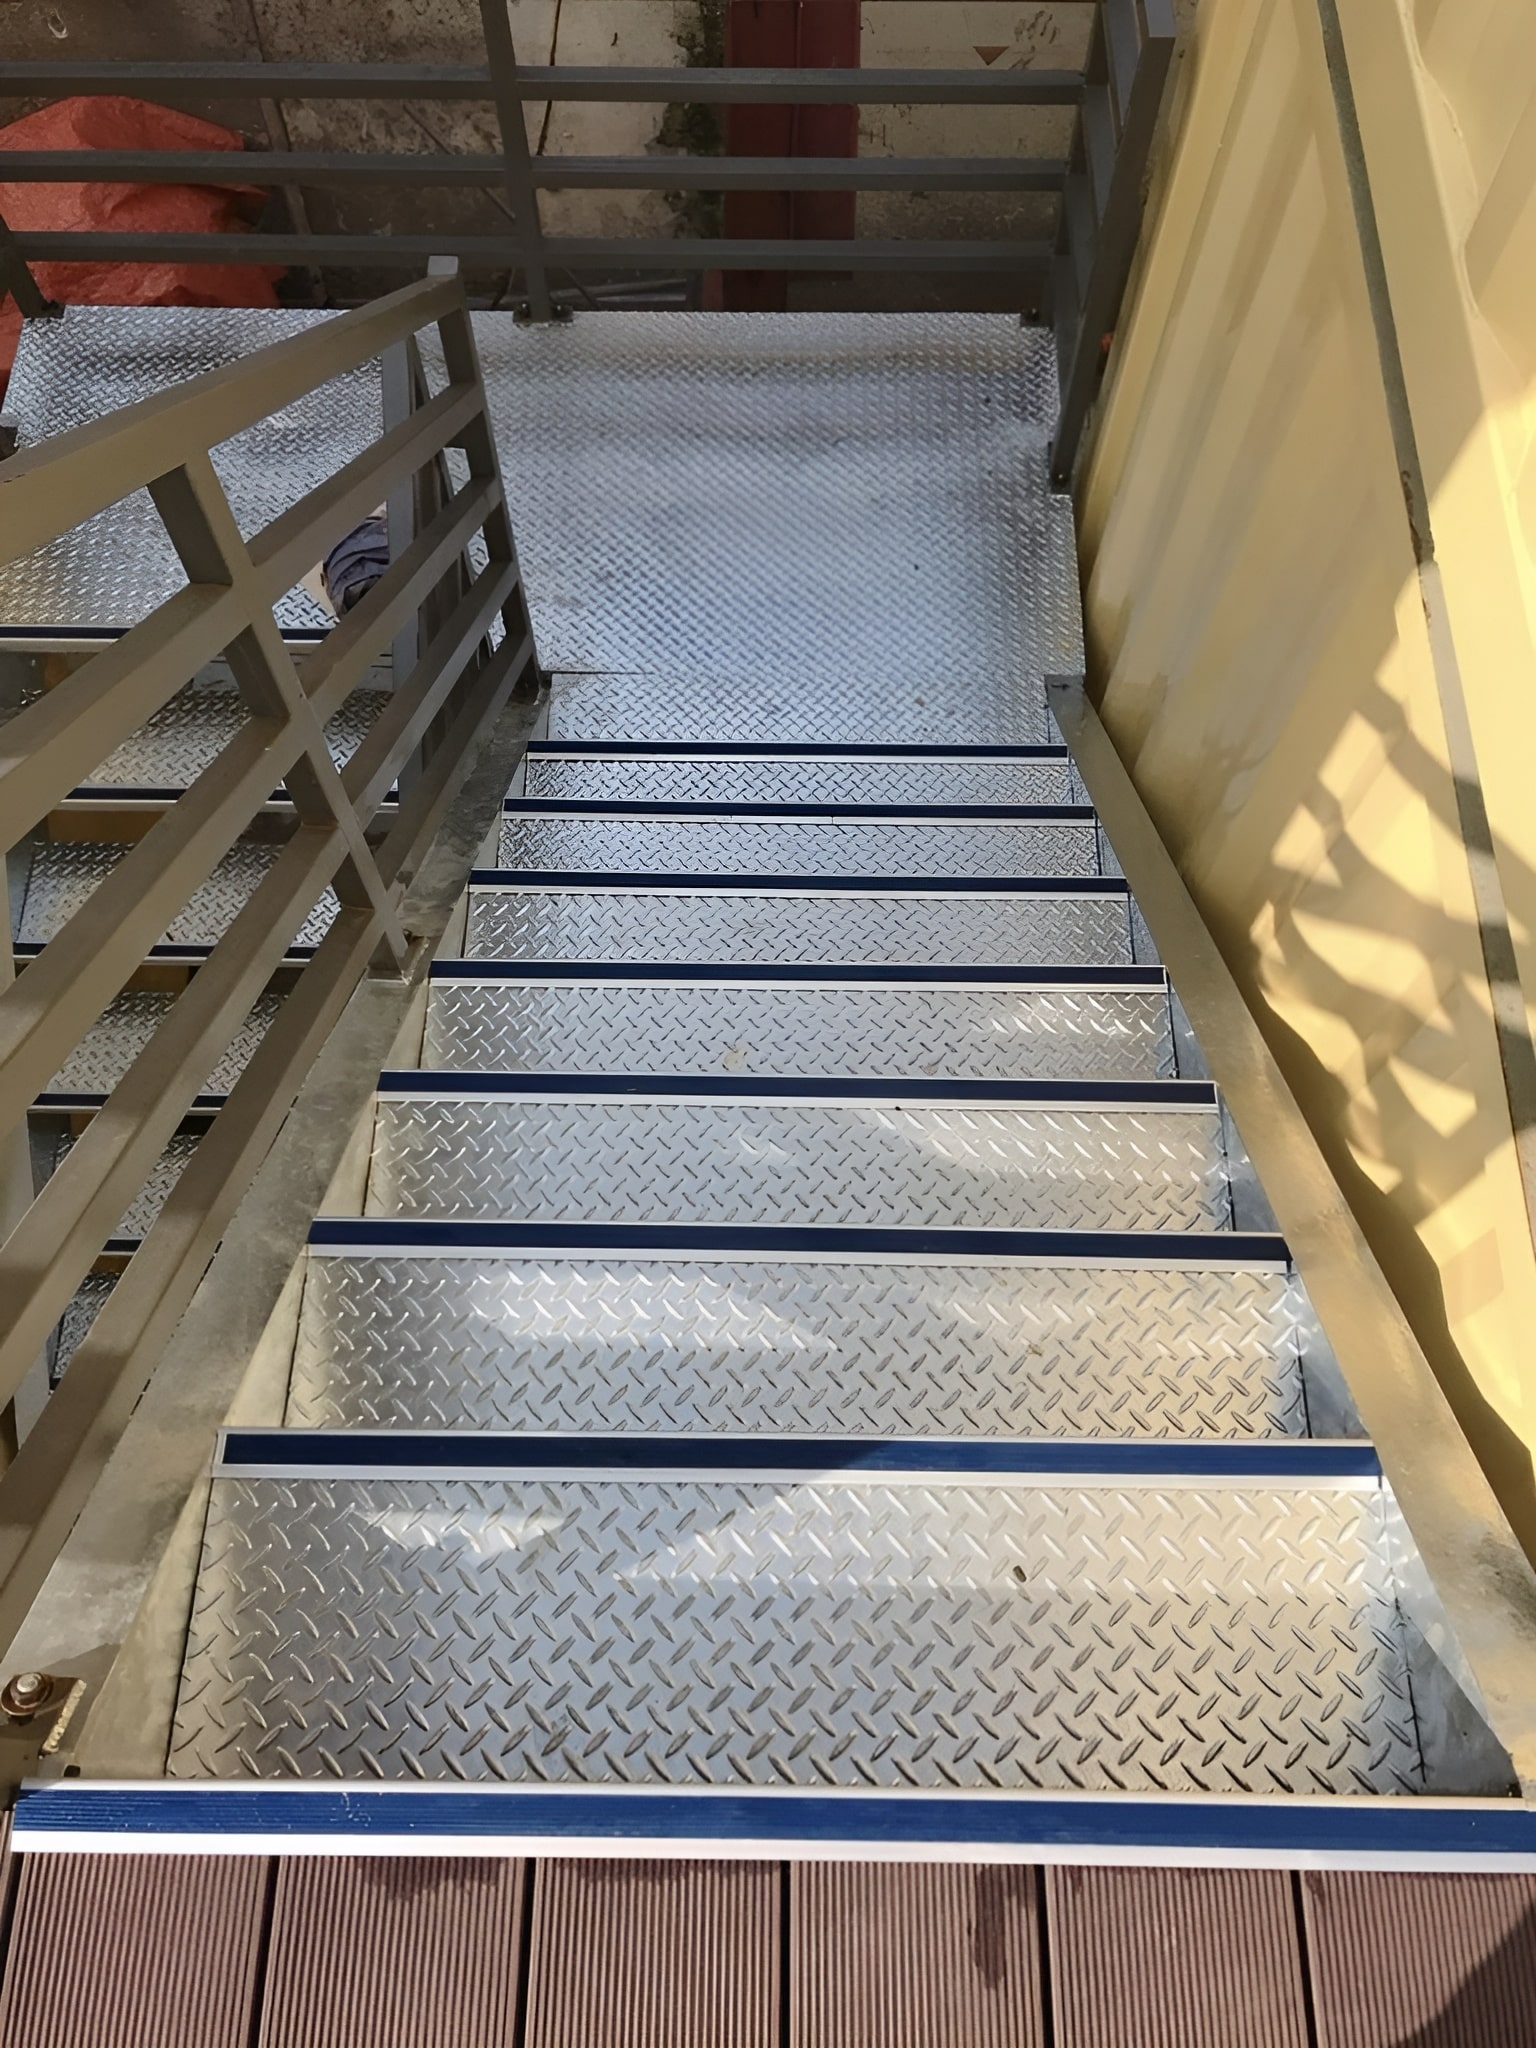 Nẹp nhôm cầu thang CT03 ở cầu thang làm bằng vật liệu sắt